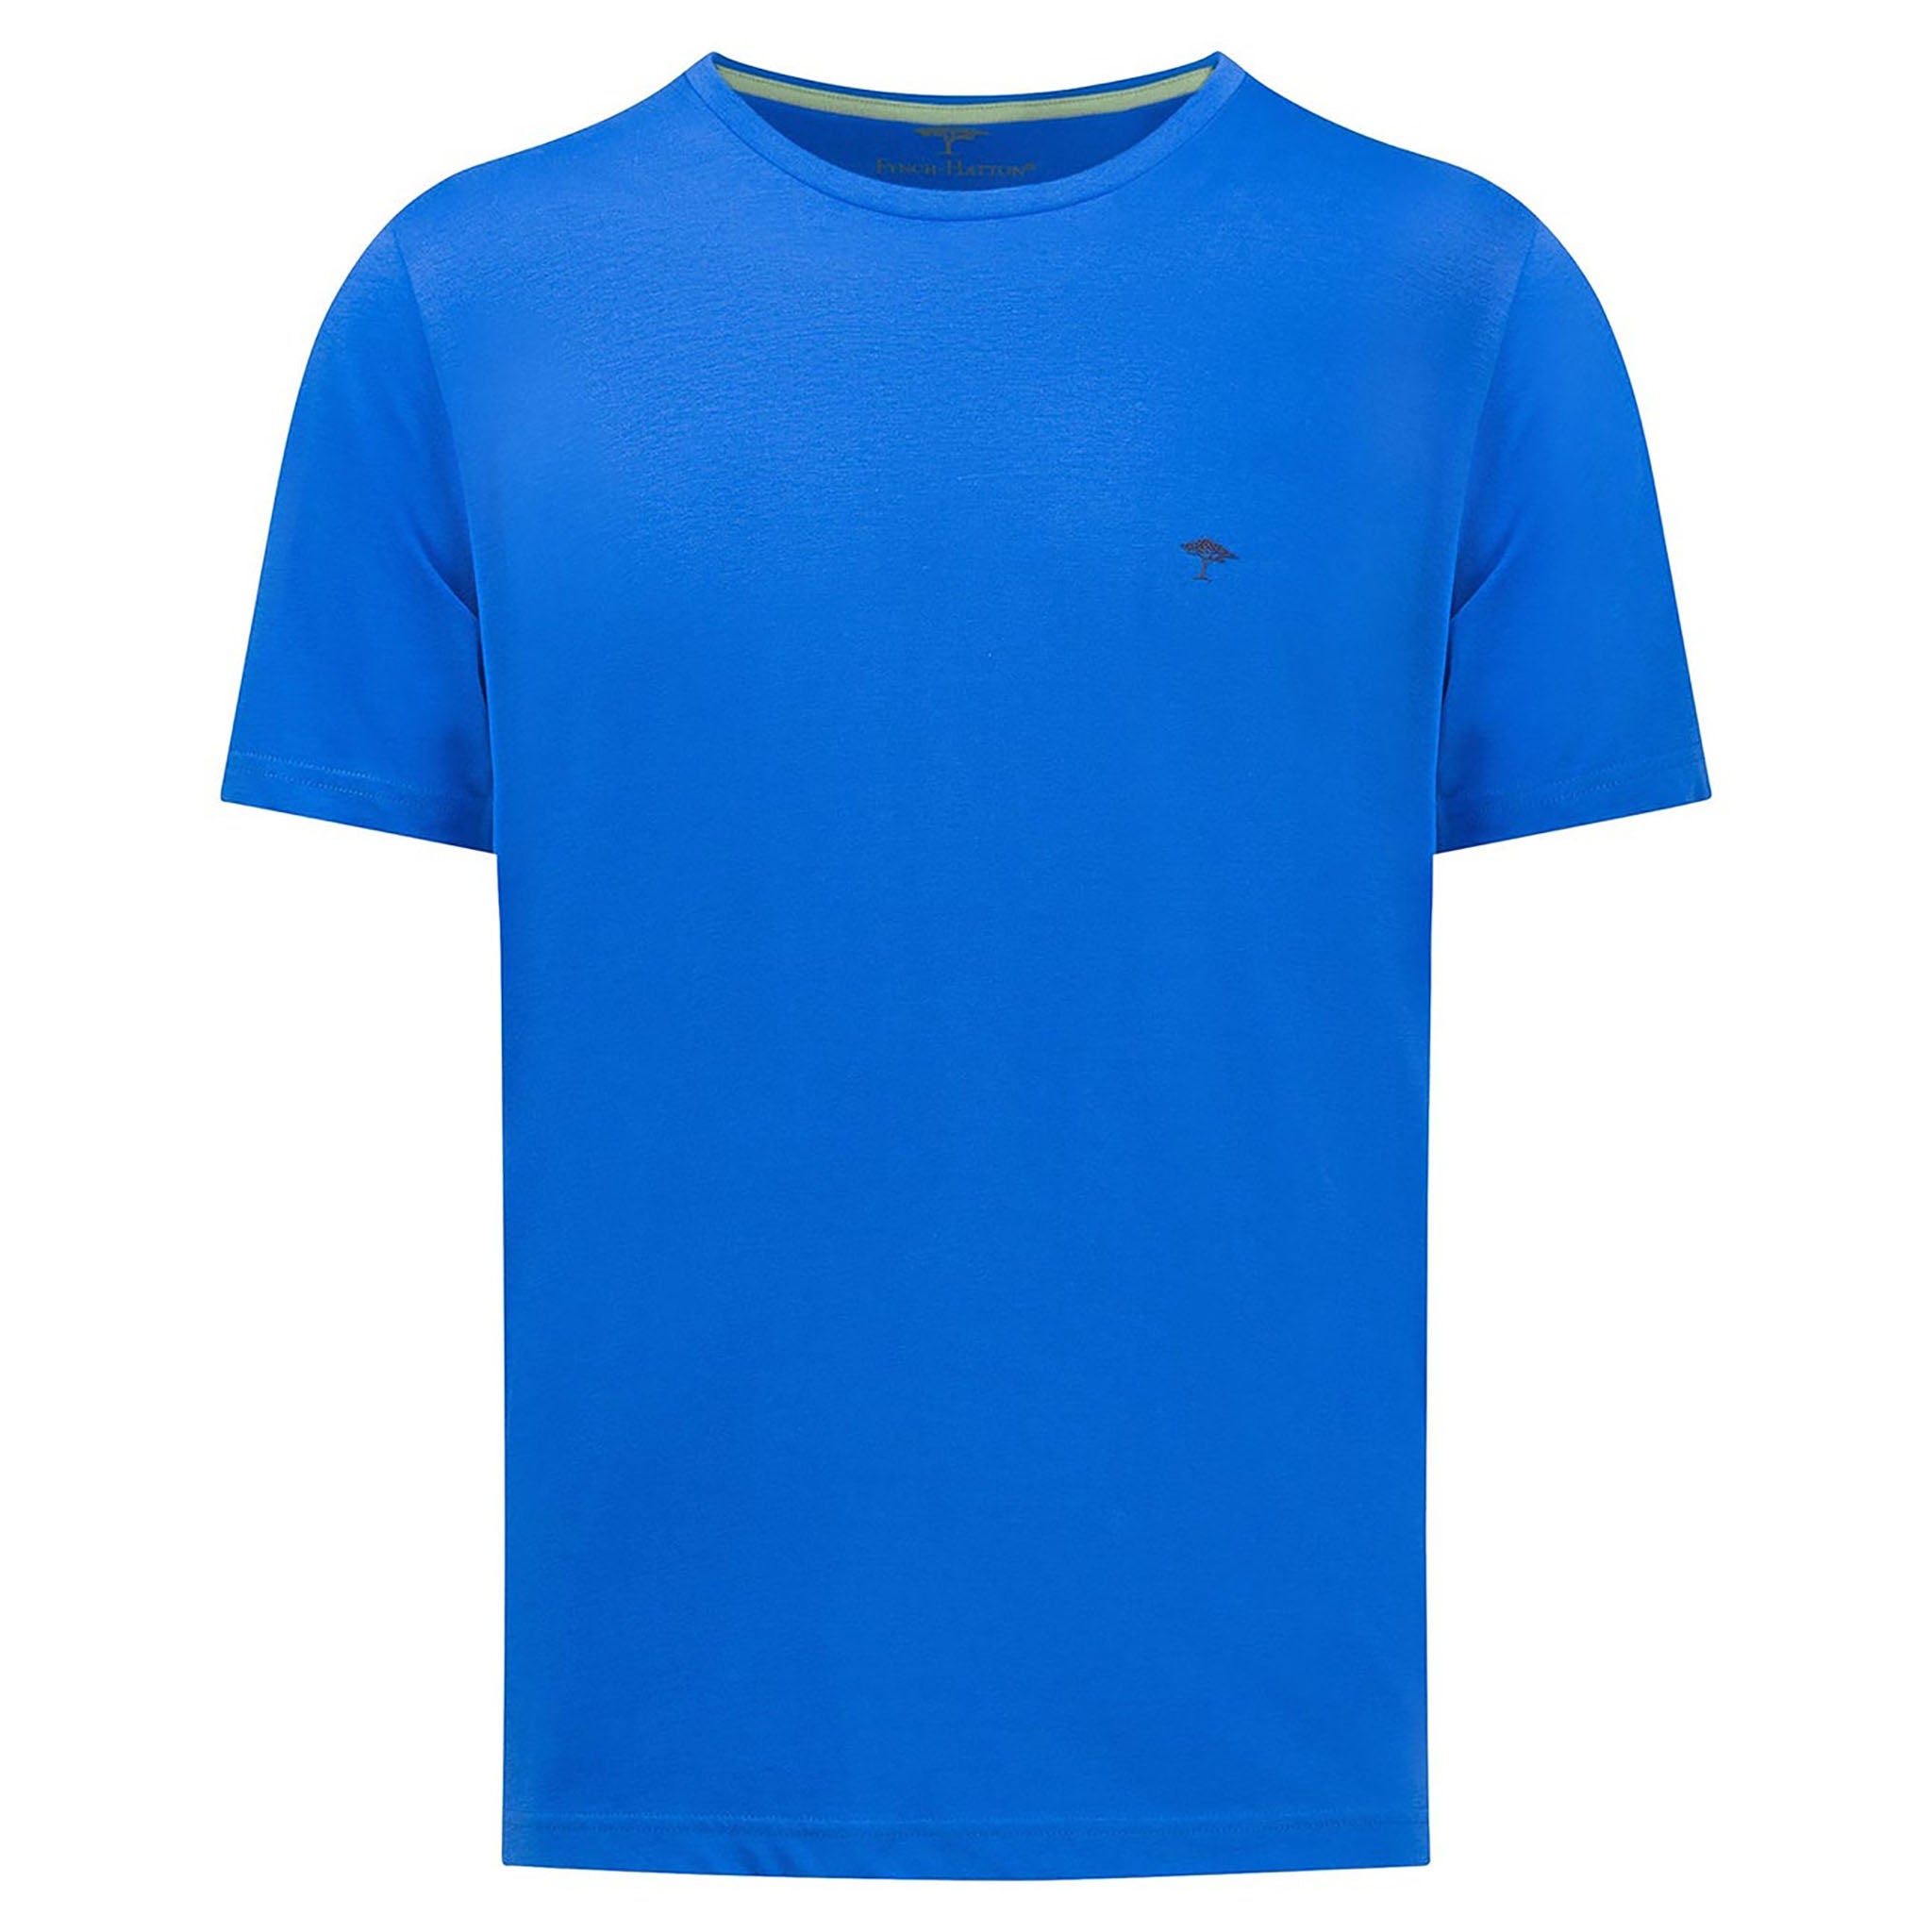 Fynch-Hatton, miesten kirkkaan sininen T-paita. Etukuva.